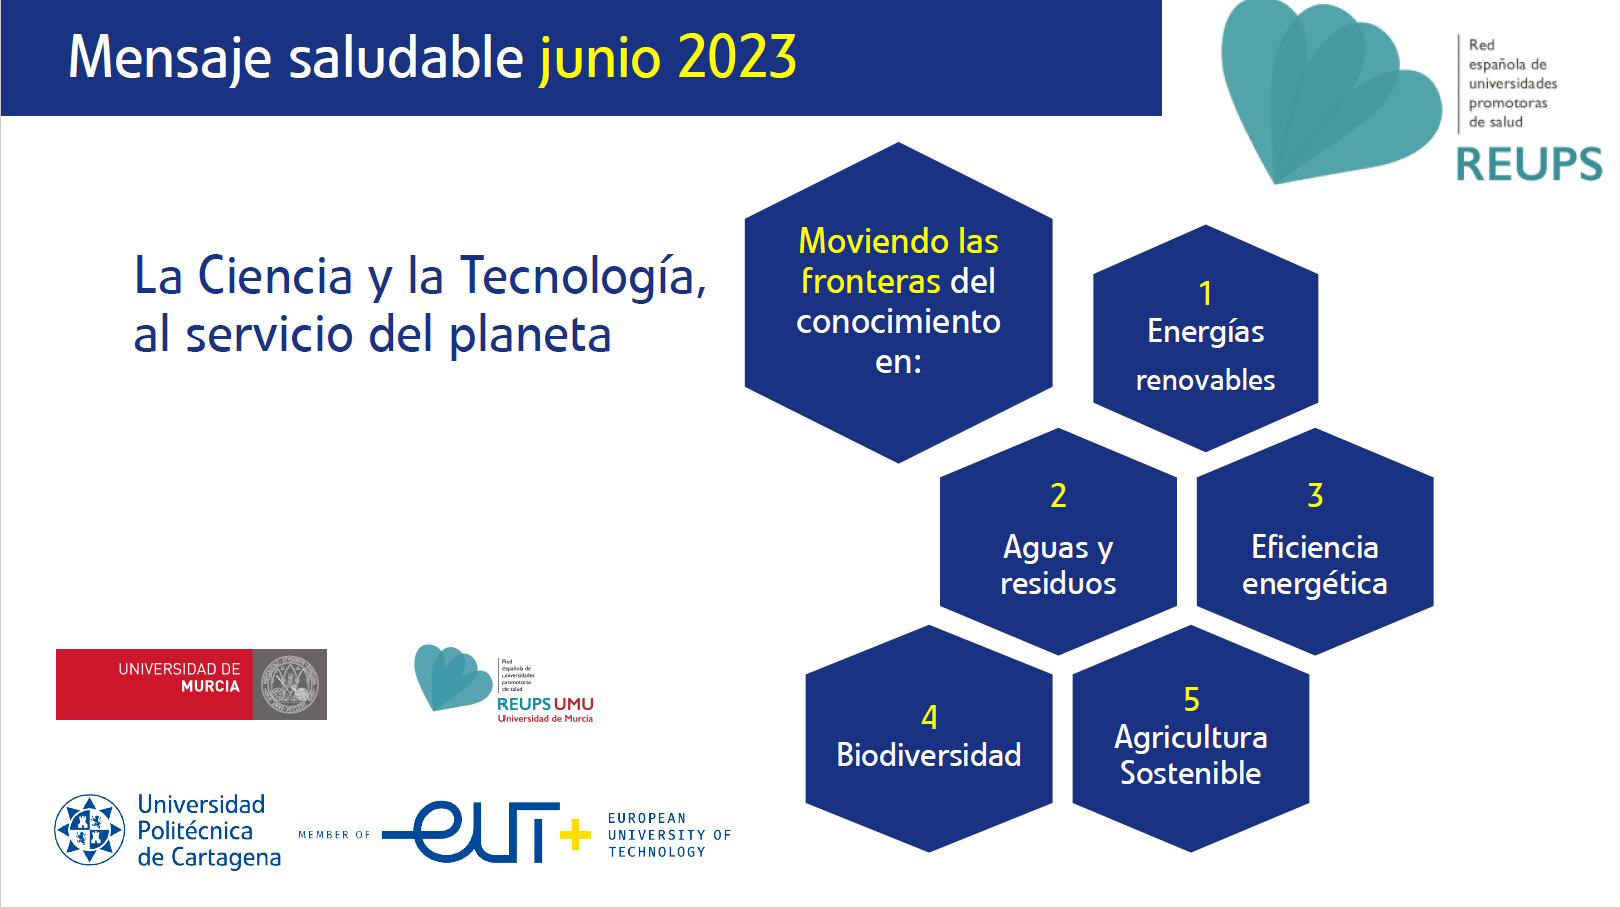 Mensaje Saludable Junio 2023: La ciencia y la tecnología, al servicio del planeta